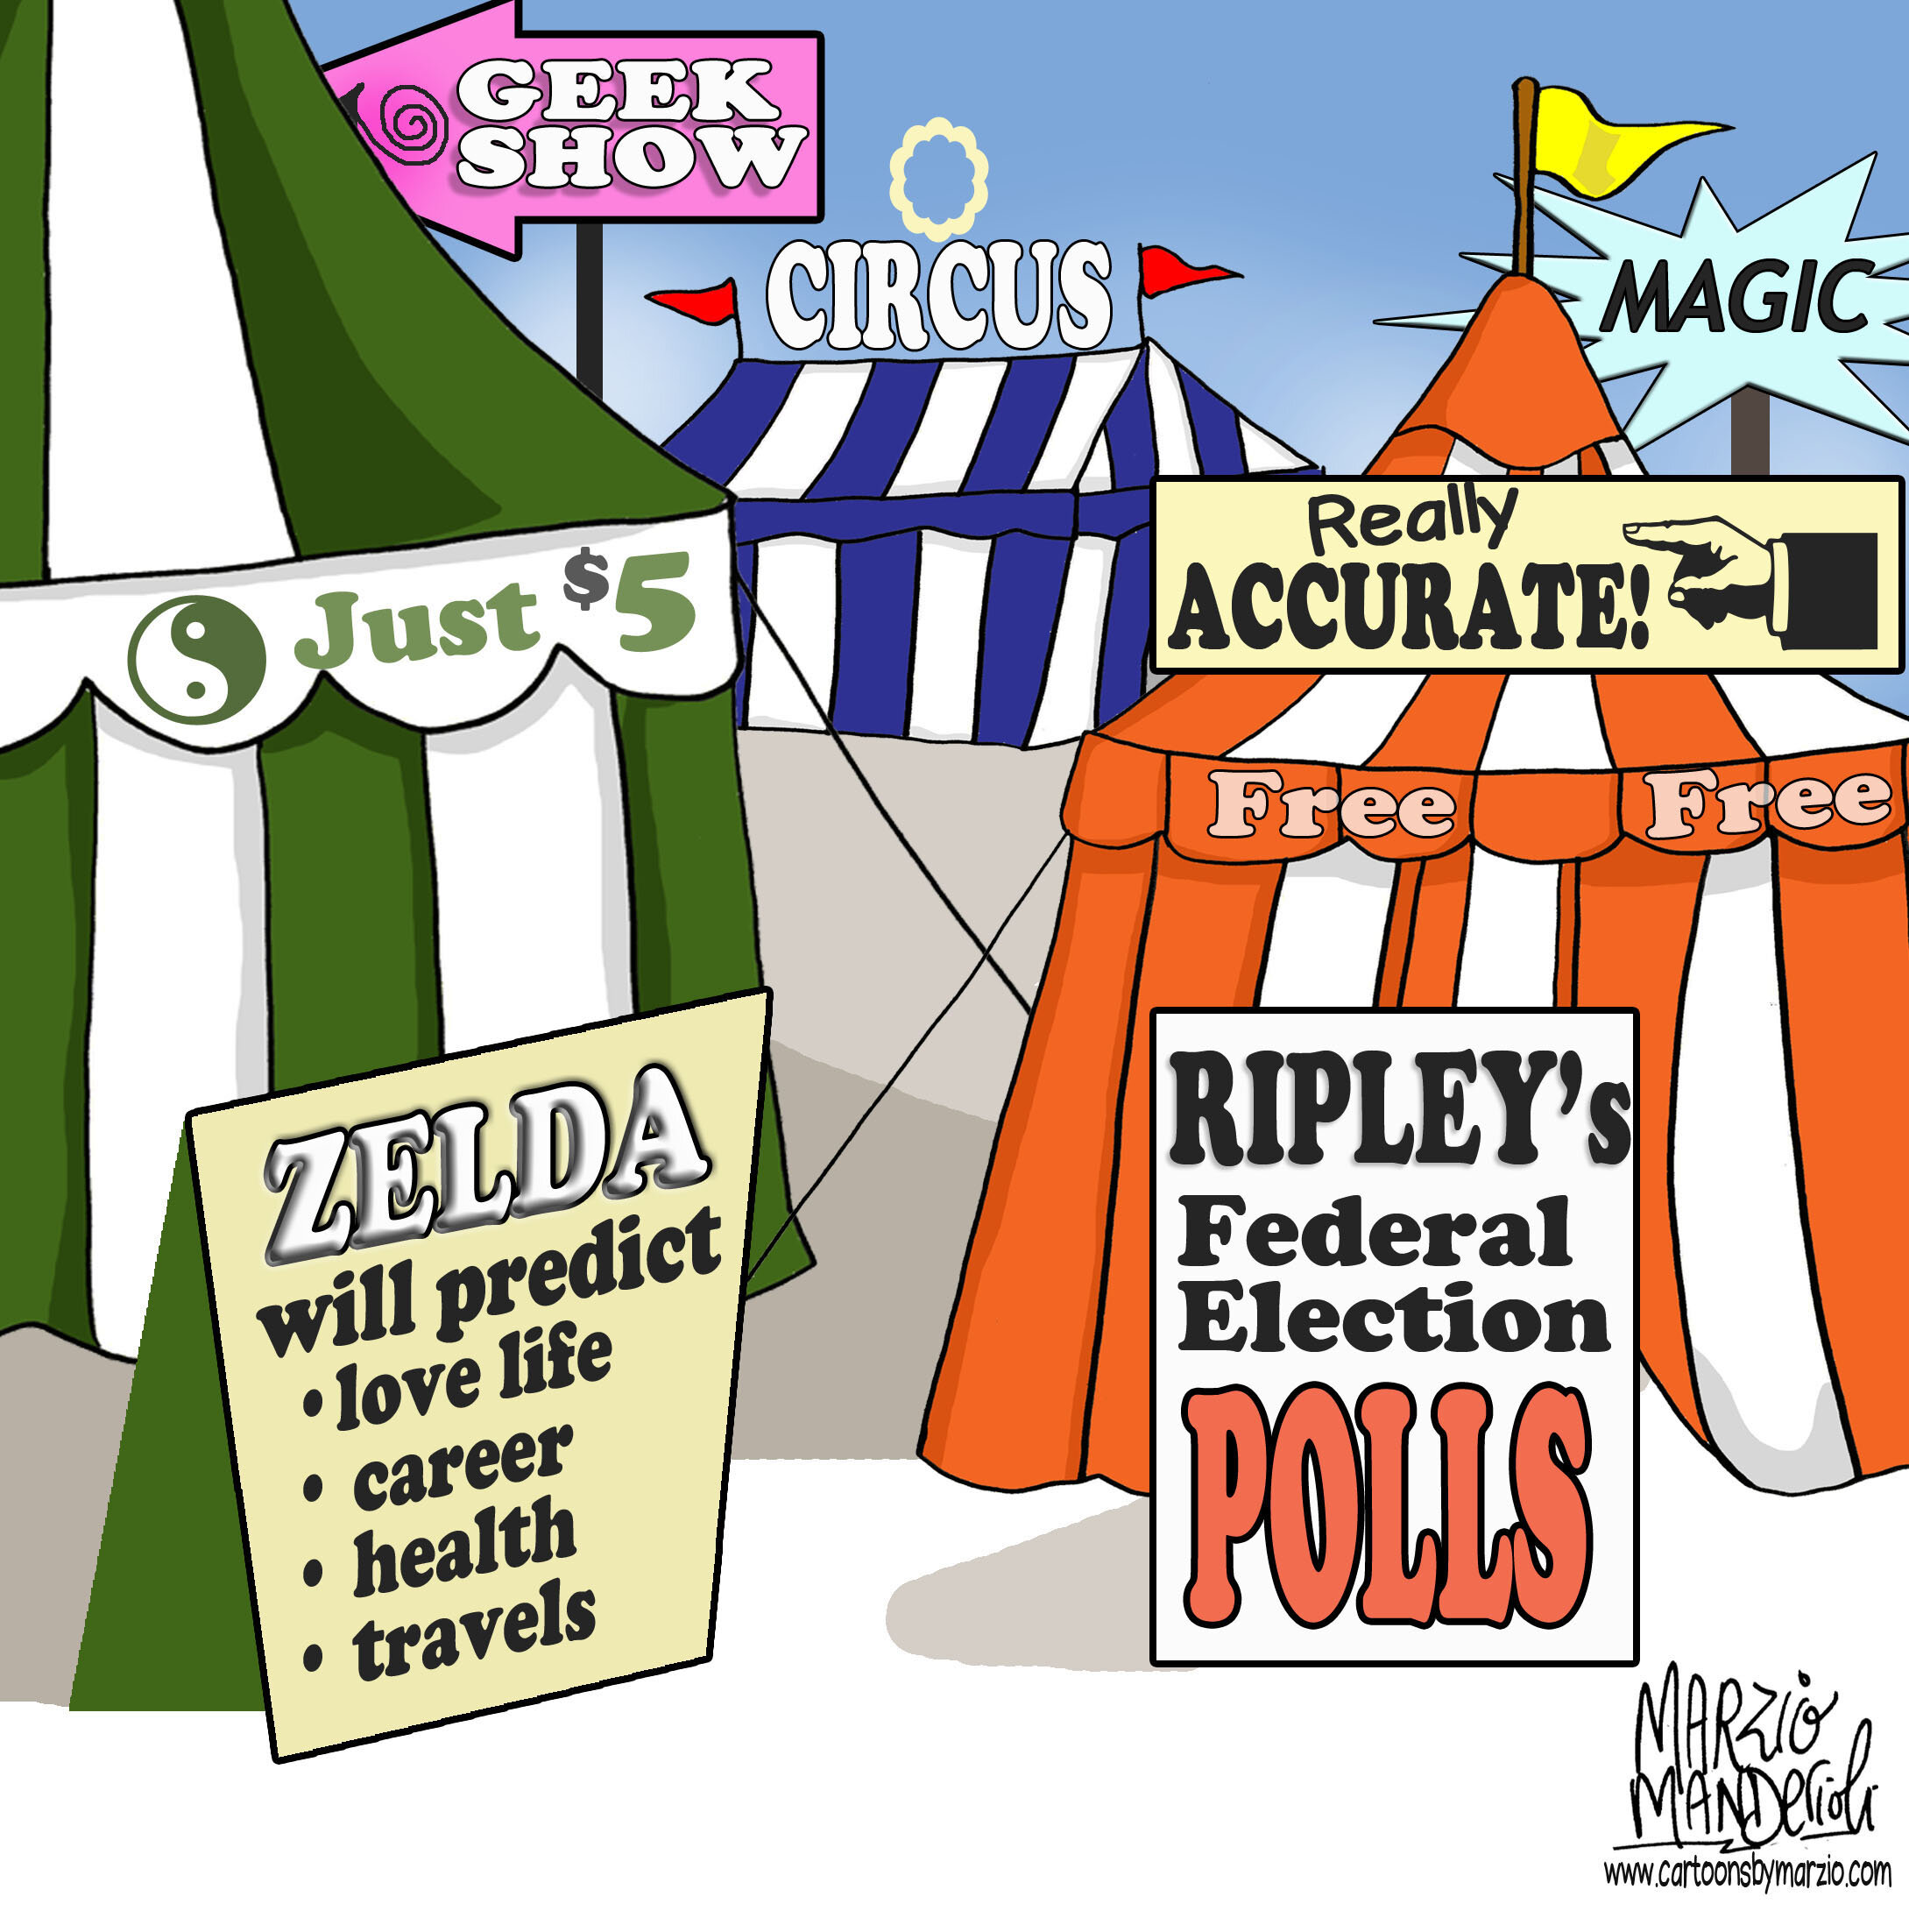 Federal Polls Cartoon.jpg